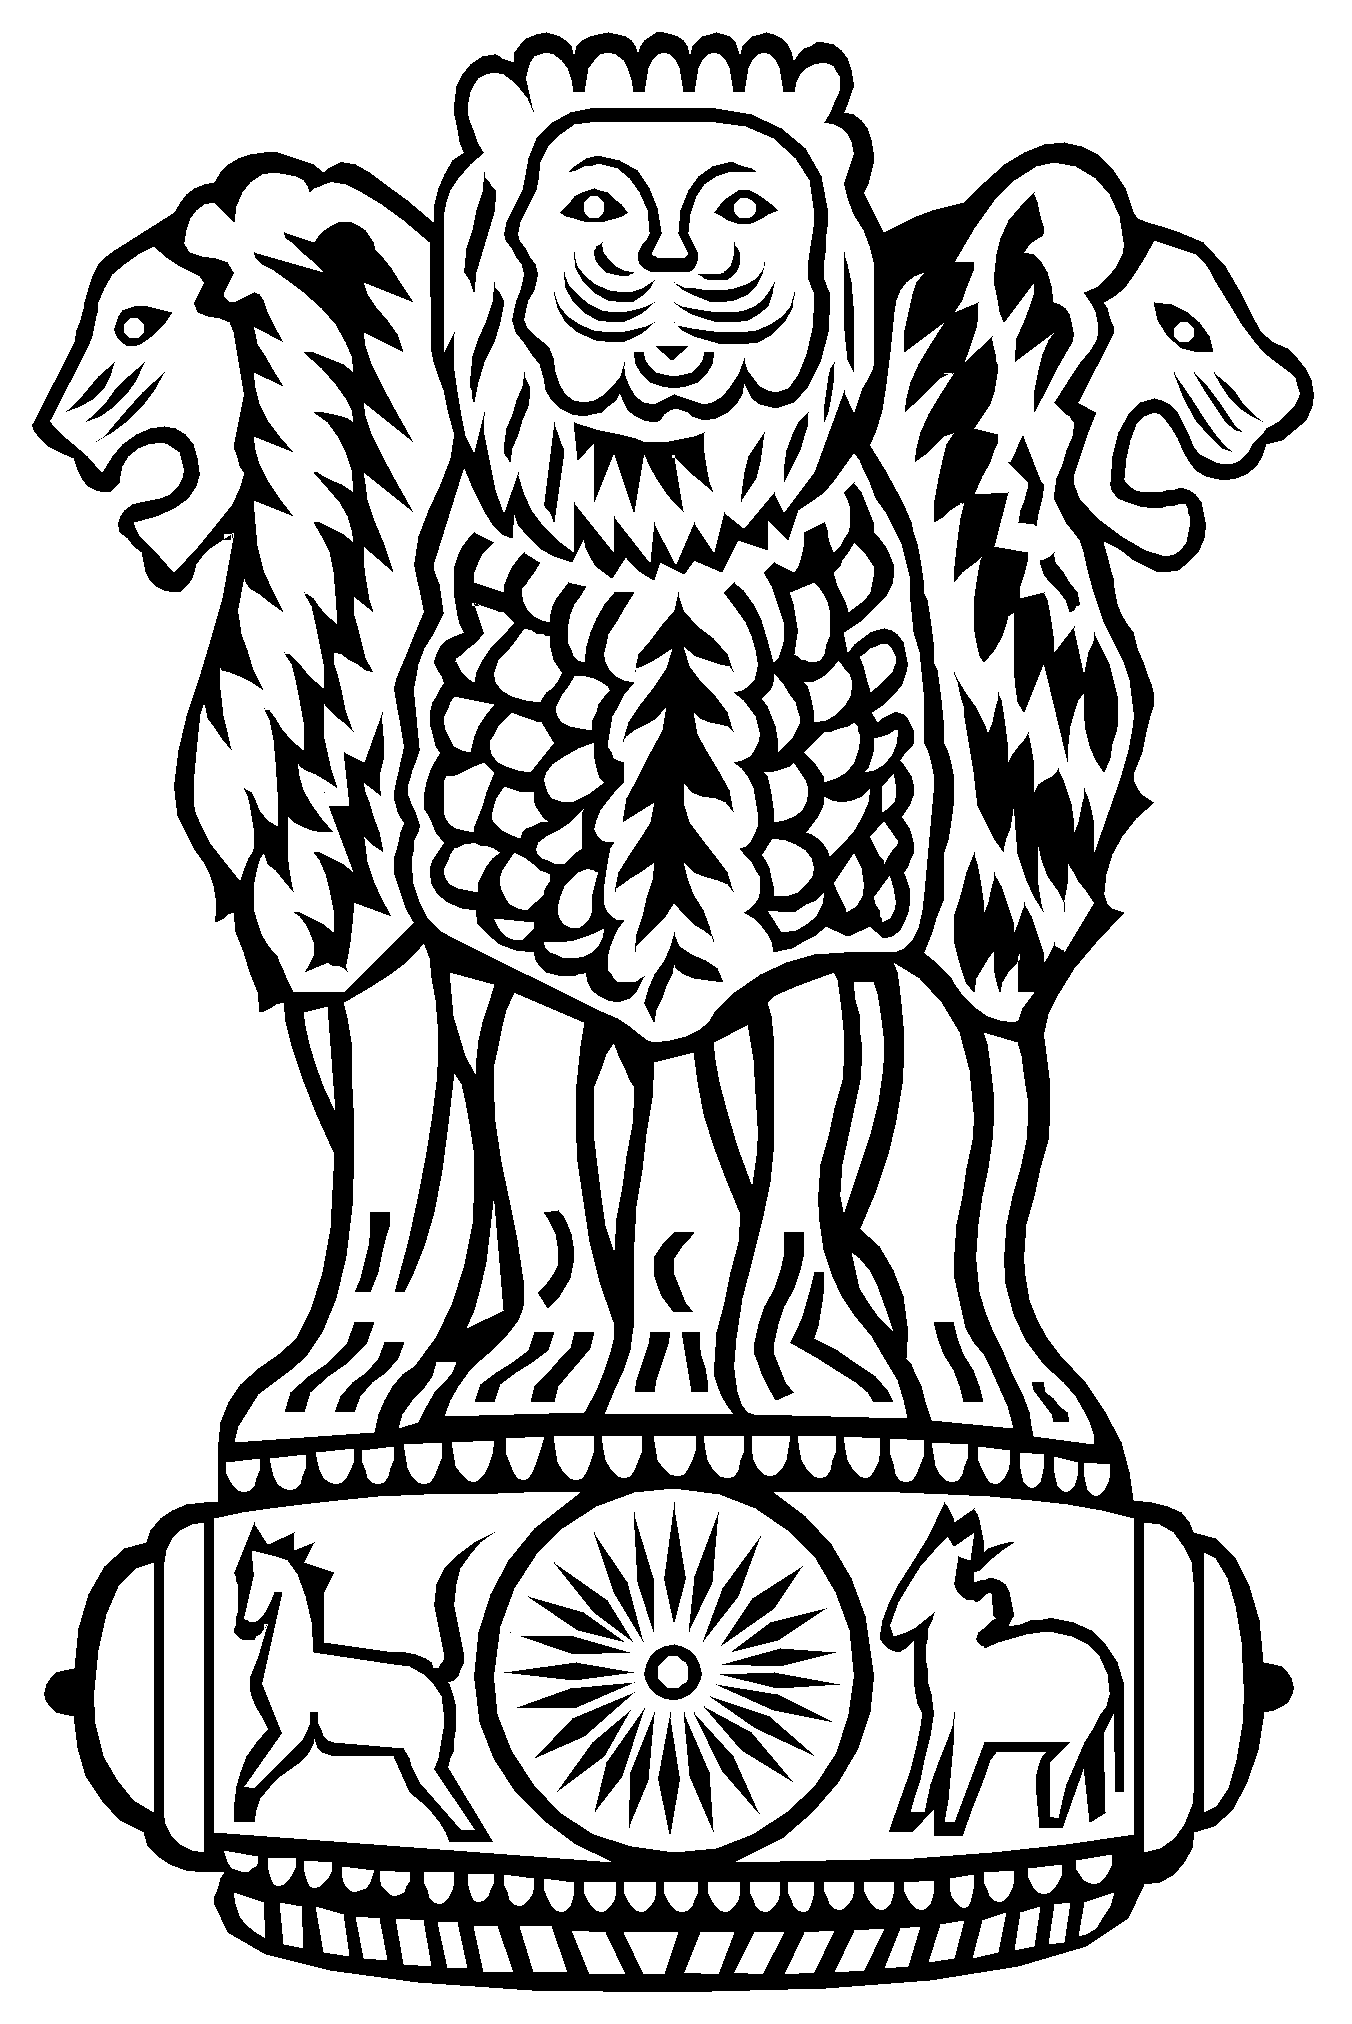 Our National Emblem